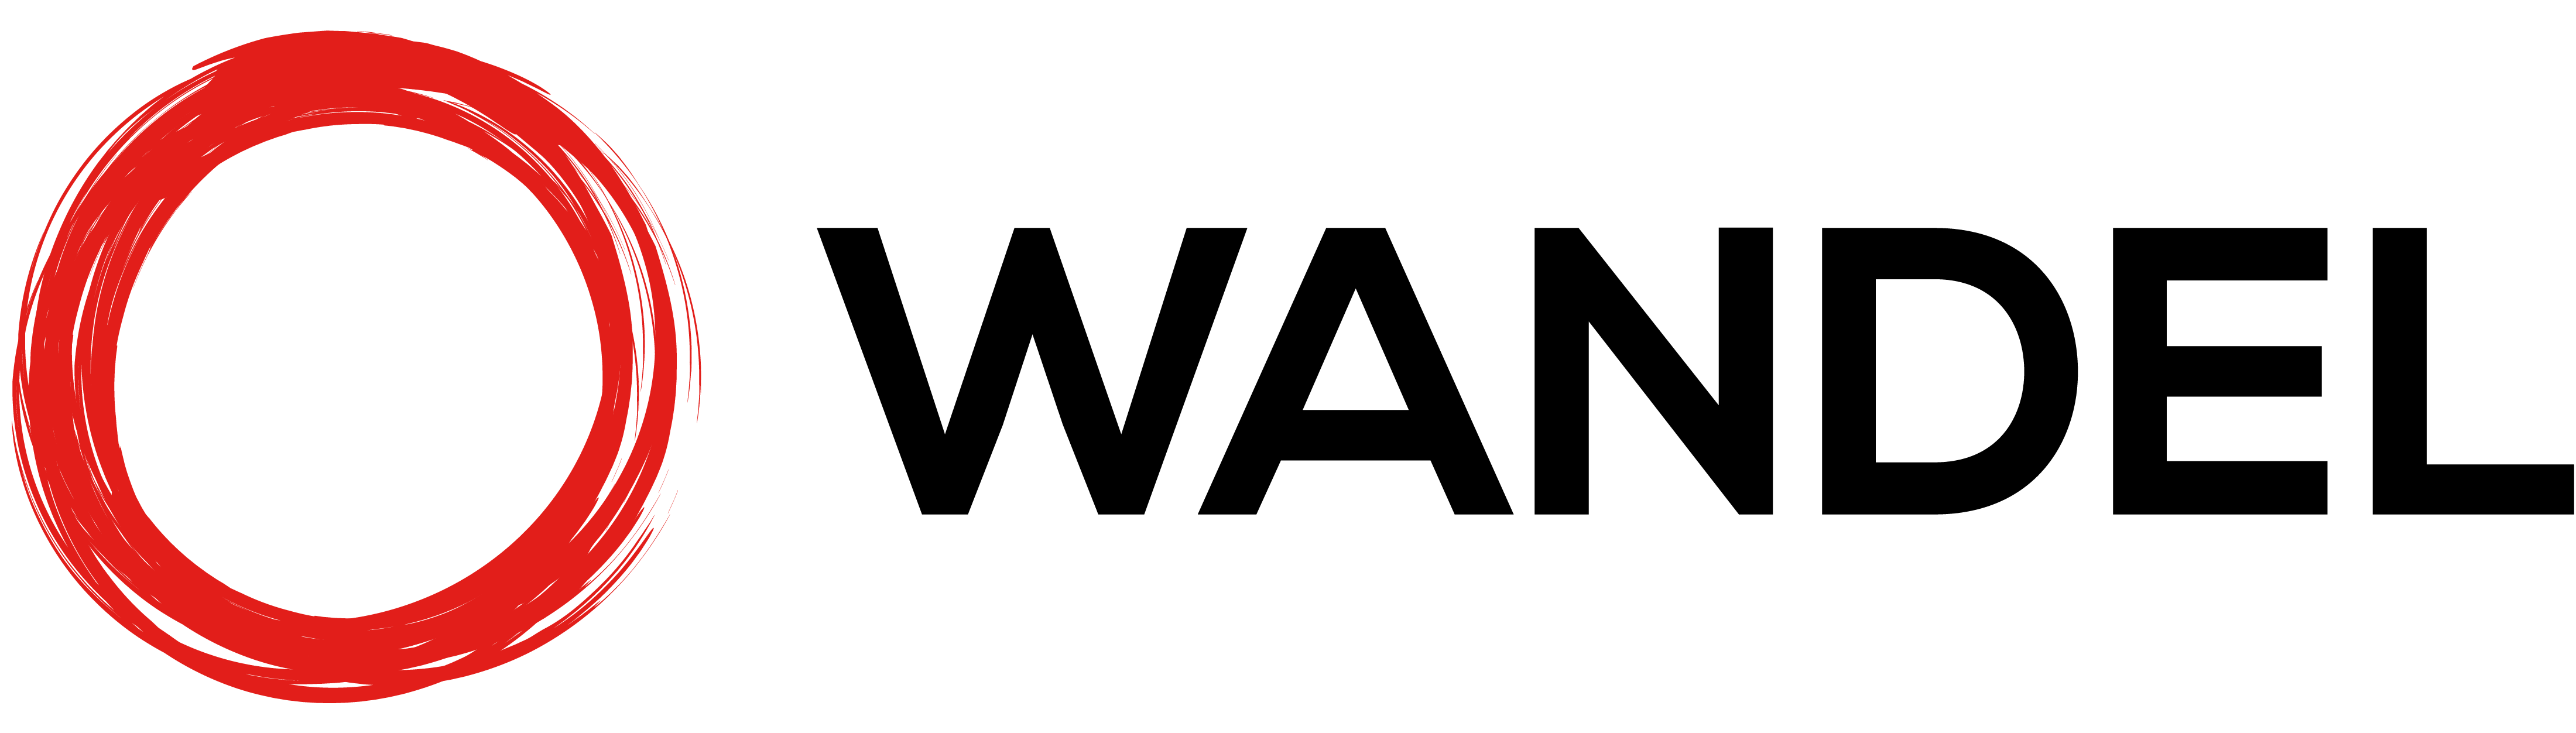 Wandel logo